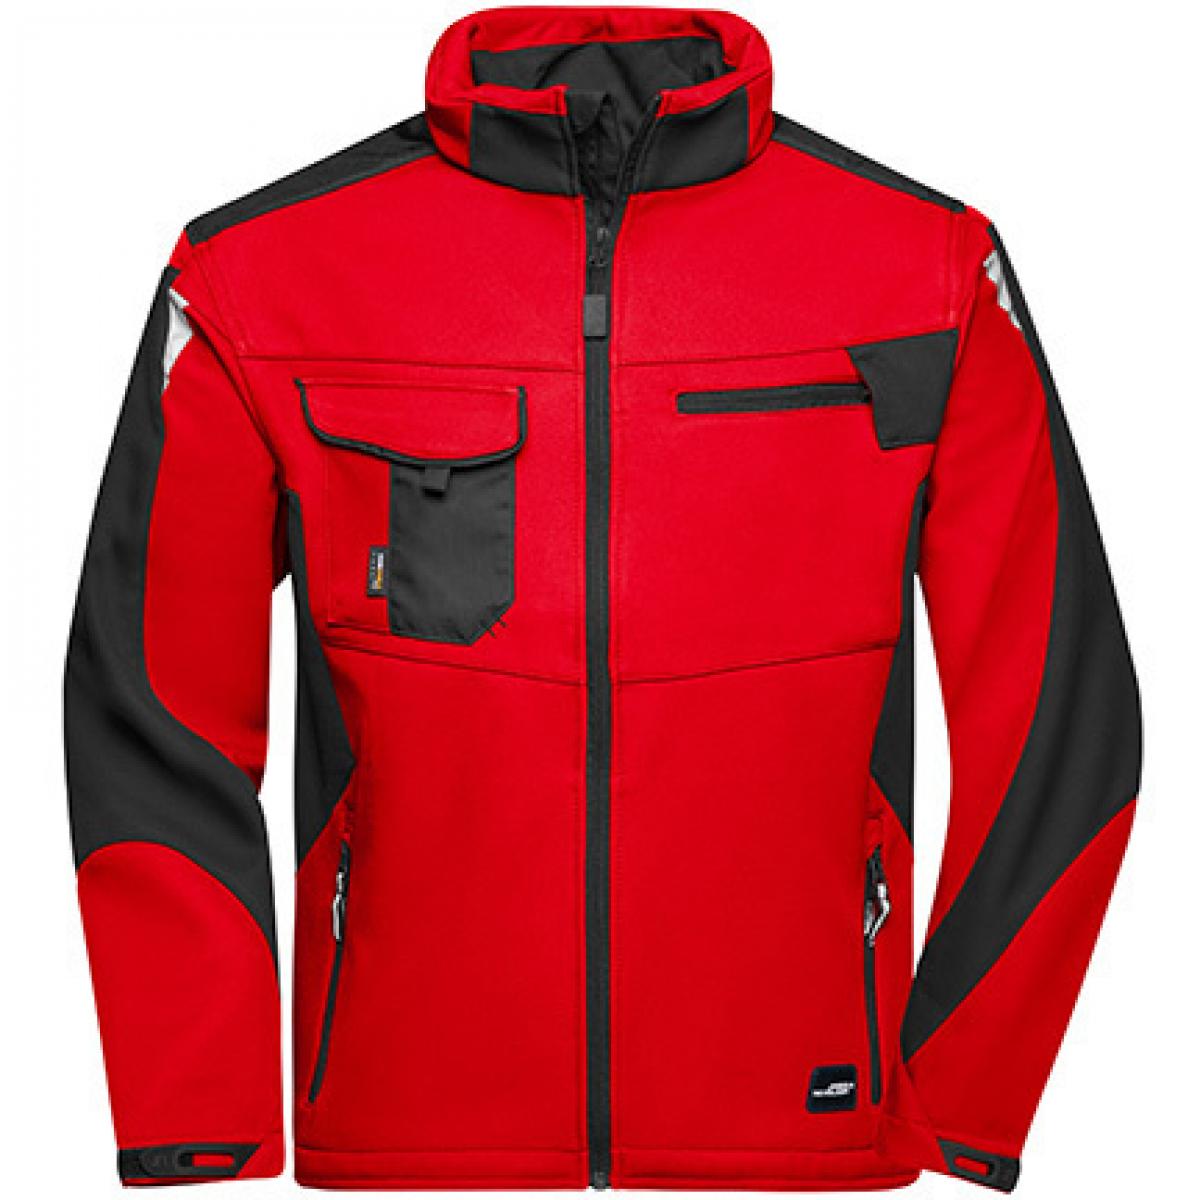 Hersteller: James+Nicholson Herstellernummer: JN844 Artikelbezeichnung: Herren Jacke, Workwear Softshell Jacket -STRONG- Farbe: Red/Black